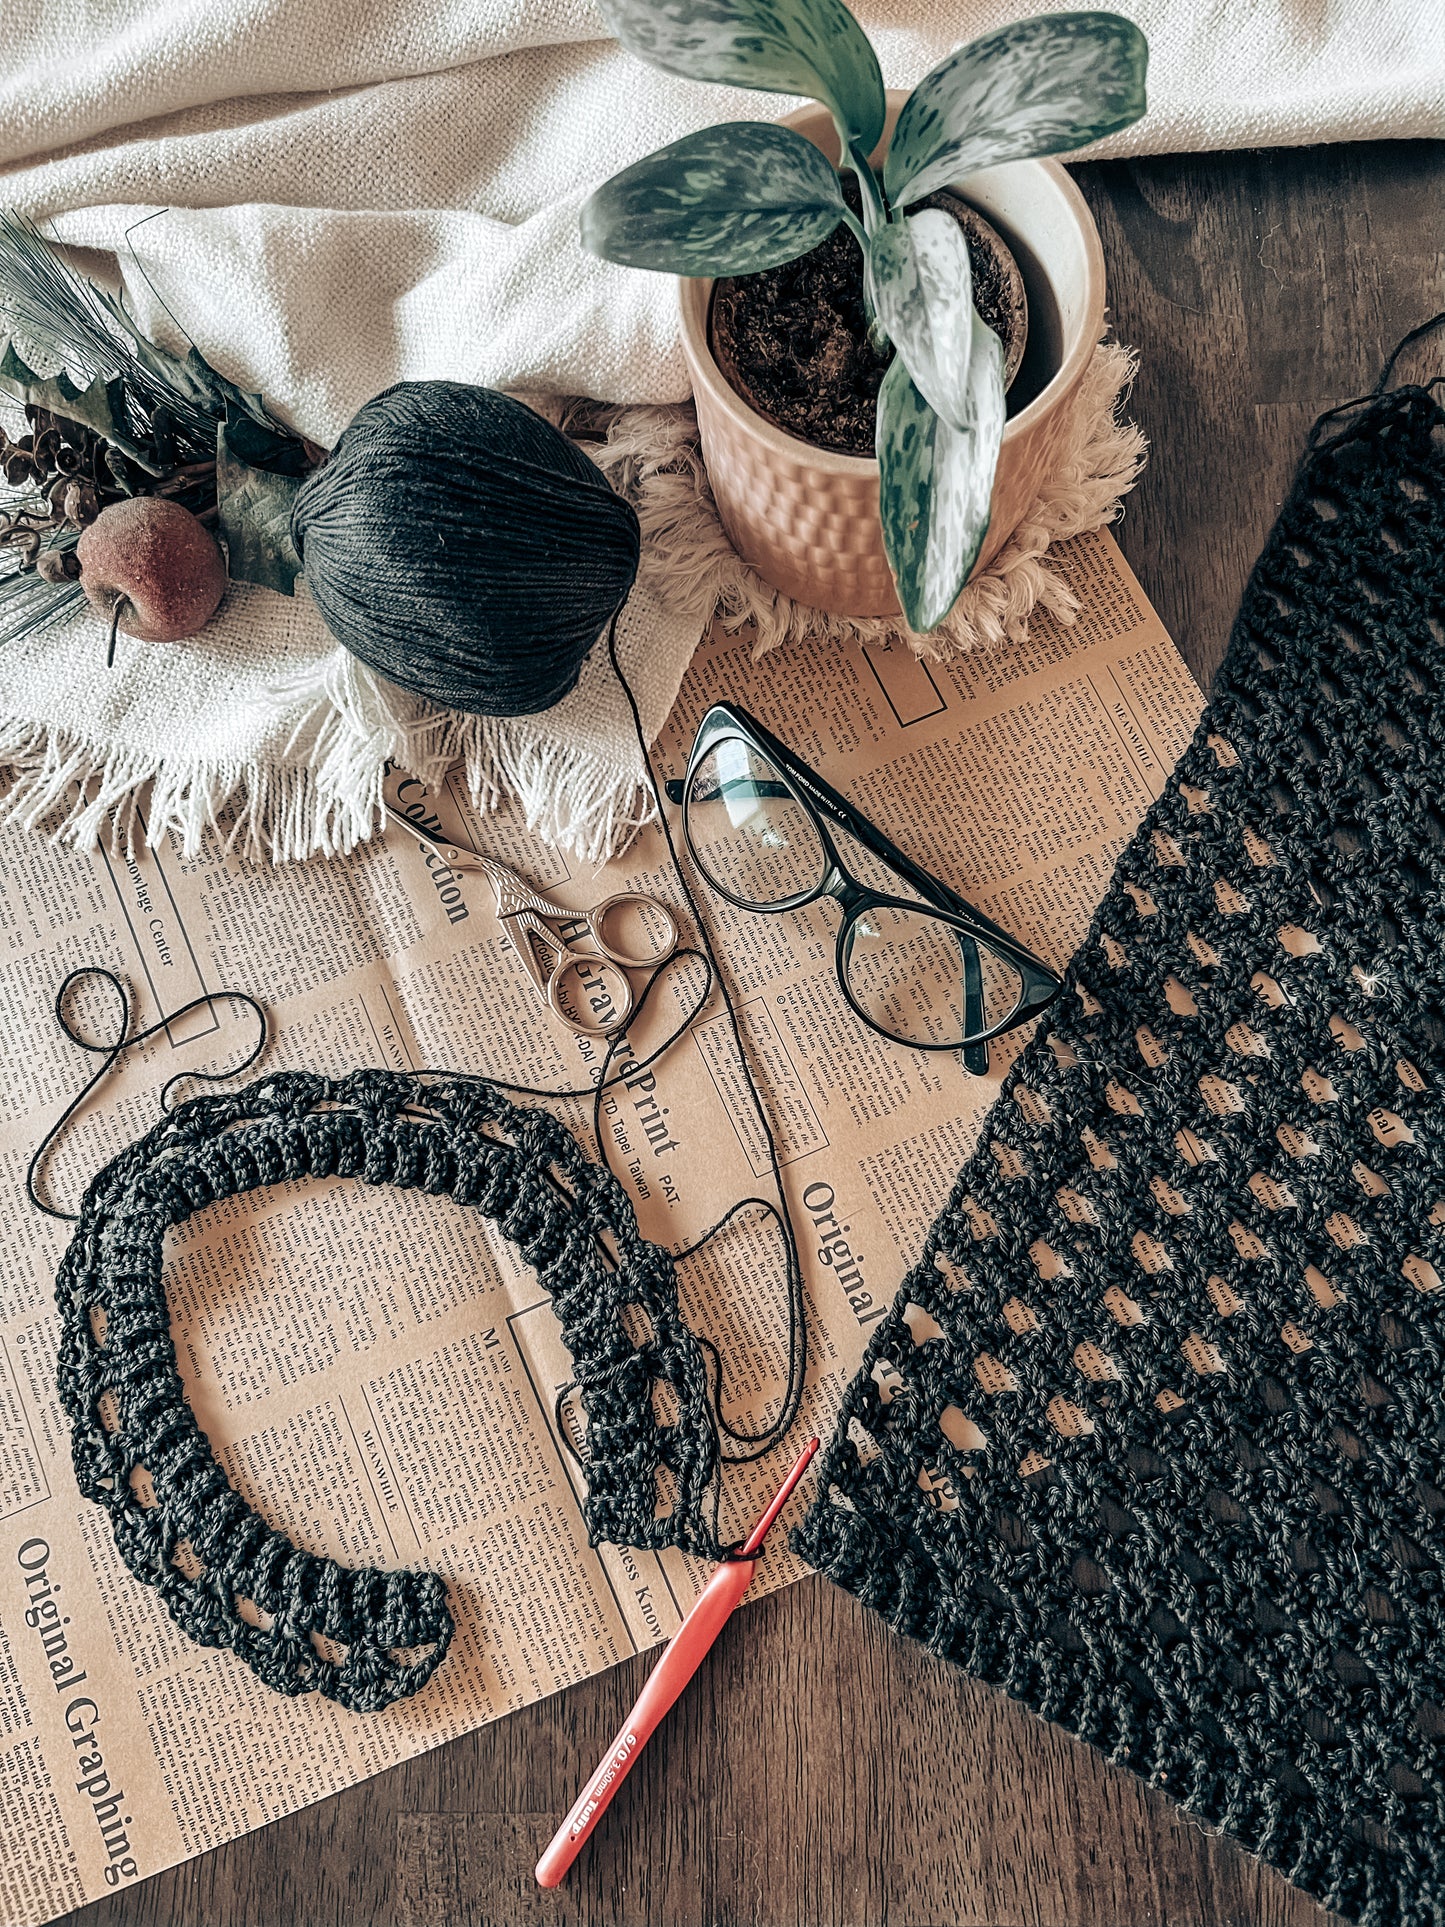 Kanee Top Crochet Kit